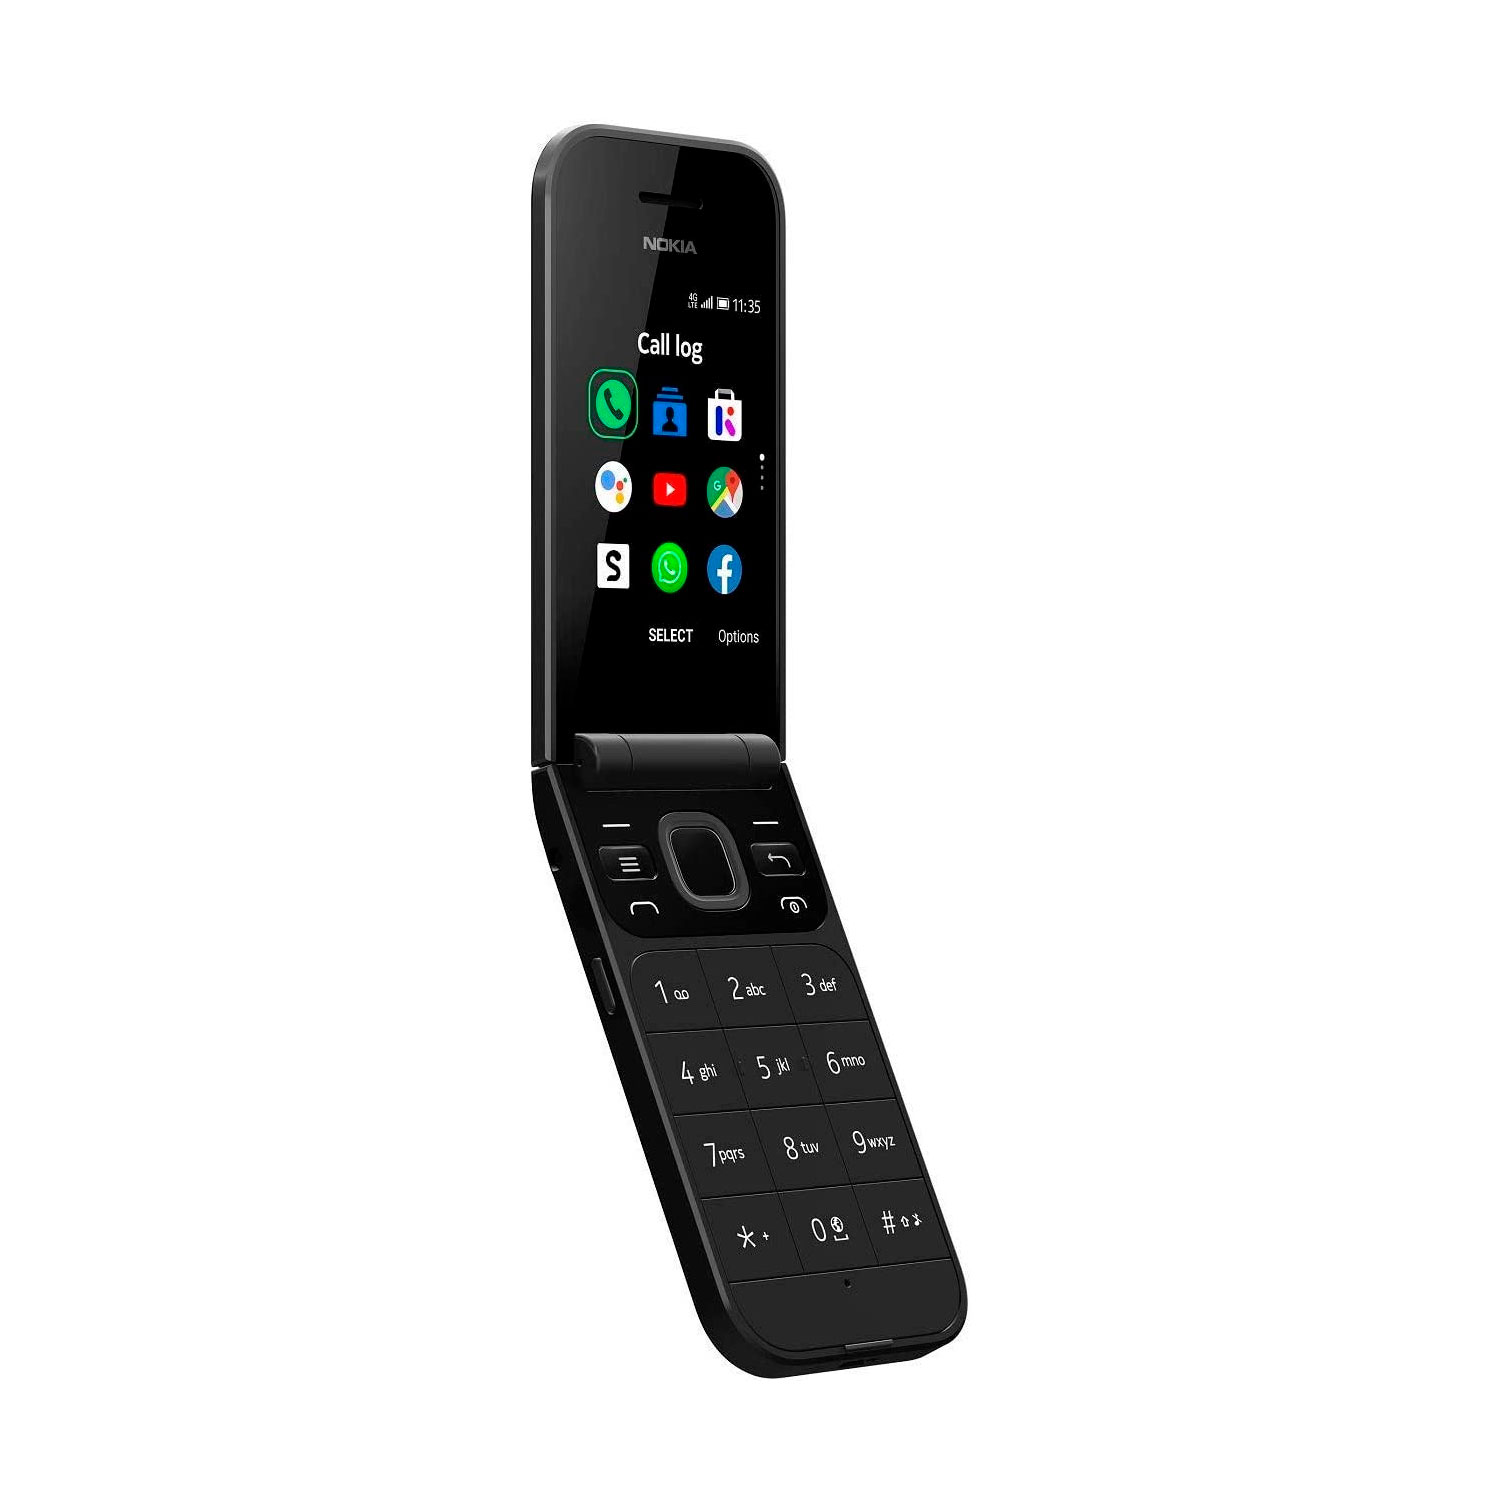 Celular Nokia Flip 2720 2G TA-1170 Dual SIM Tela 2.8" - Preto